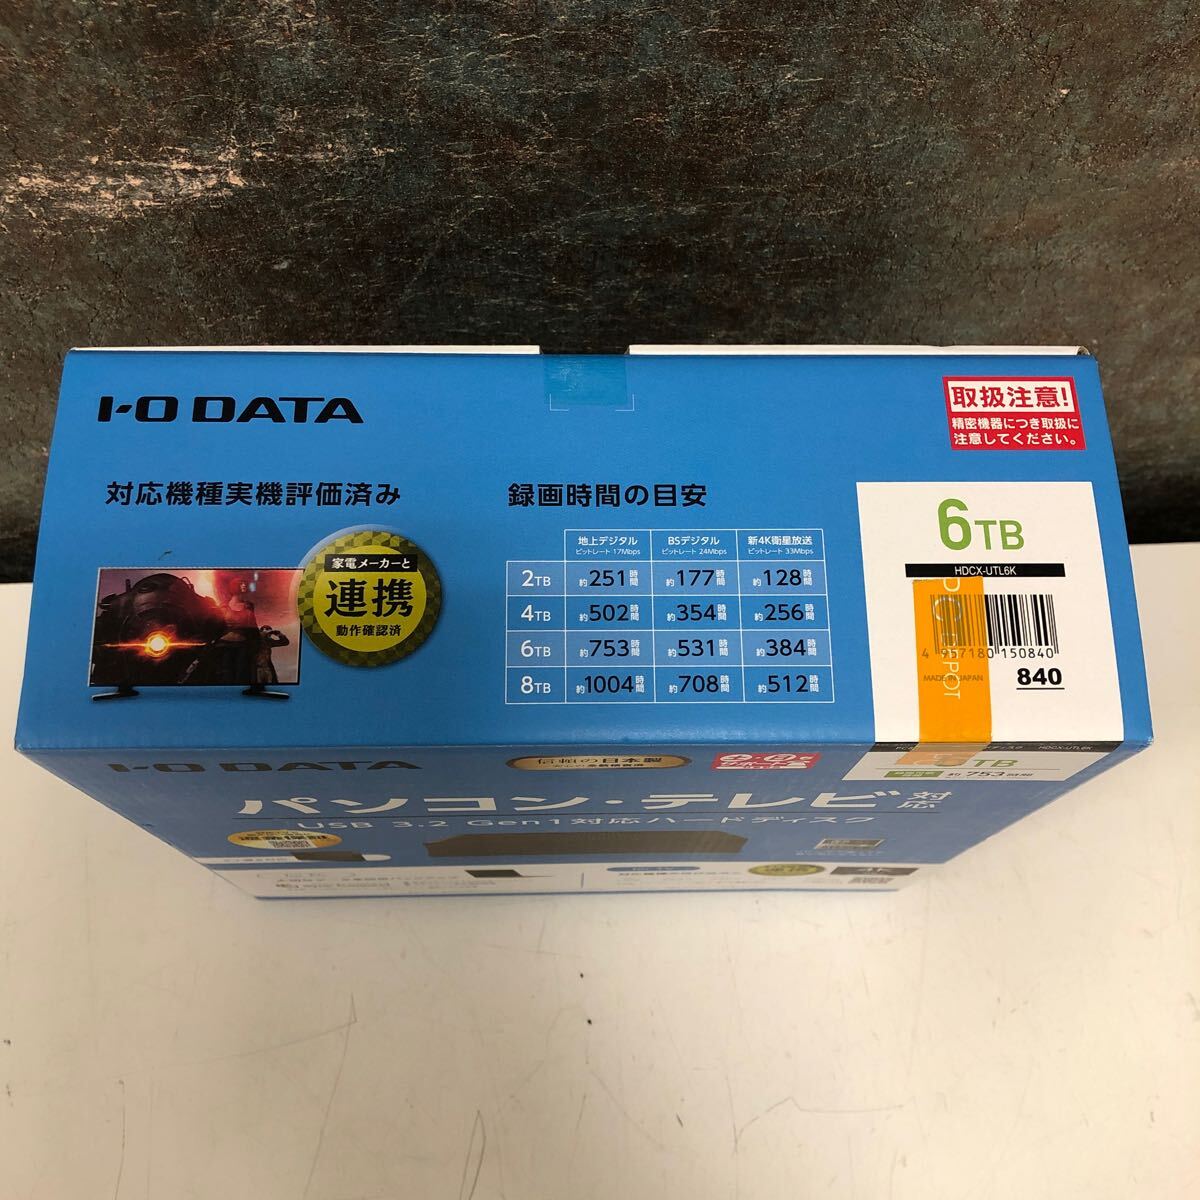 [ не использовался товар ]5-4 I-O DATA I o- данные установленный снаружи HDD 6TB USB жесткий диск персональный компьютер телевизор соответствует сделано в Японии новый товар 